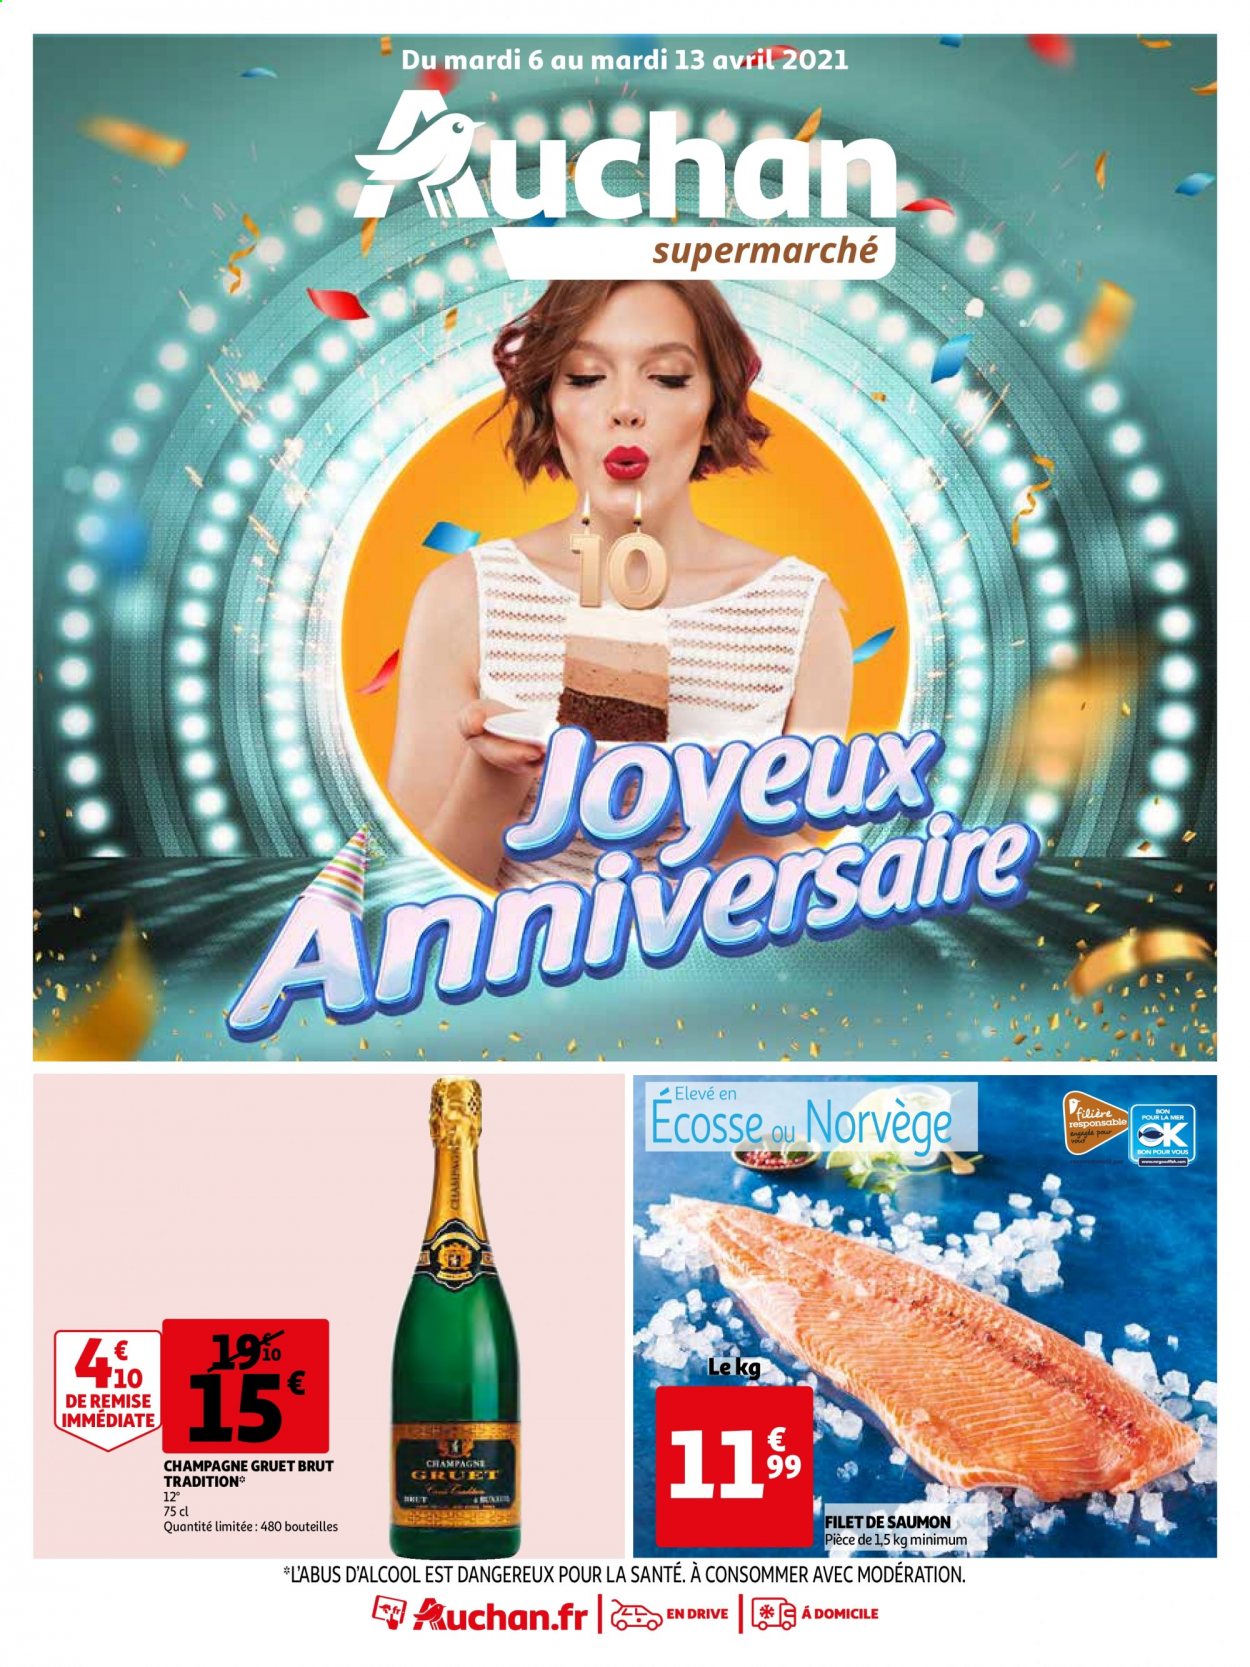 thumbnail - Catalogue Auchan - 06/04/2021 - 13/04/2021 - Produits soldés - saumon, pavés de saumon, champagne. Page 1.